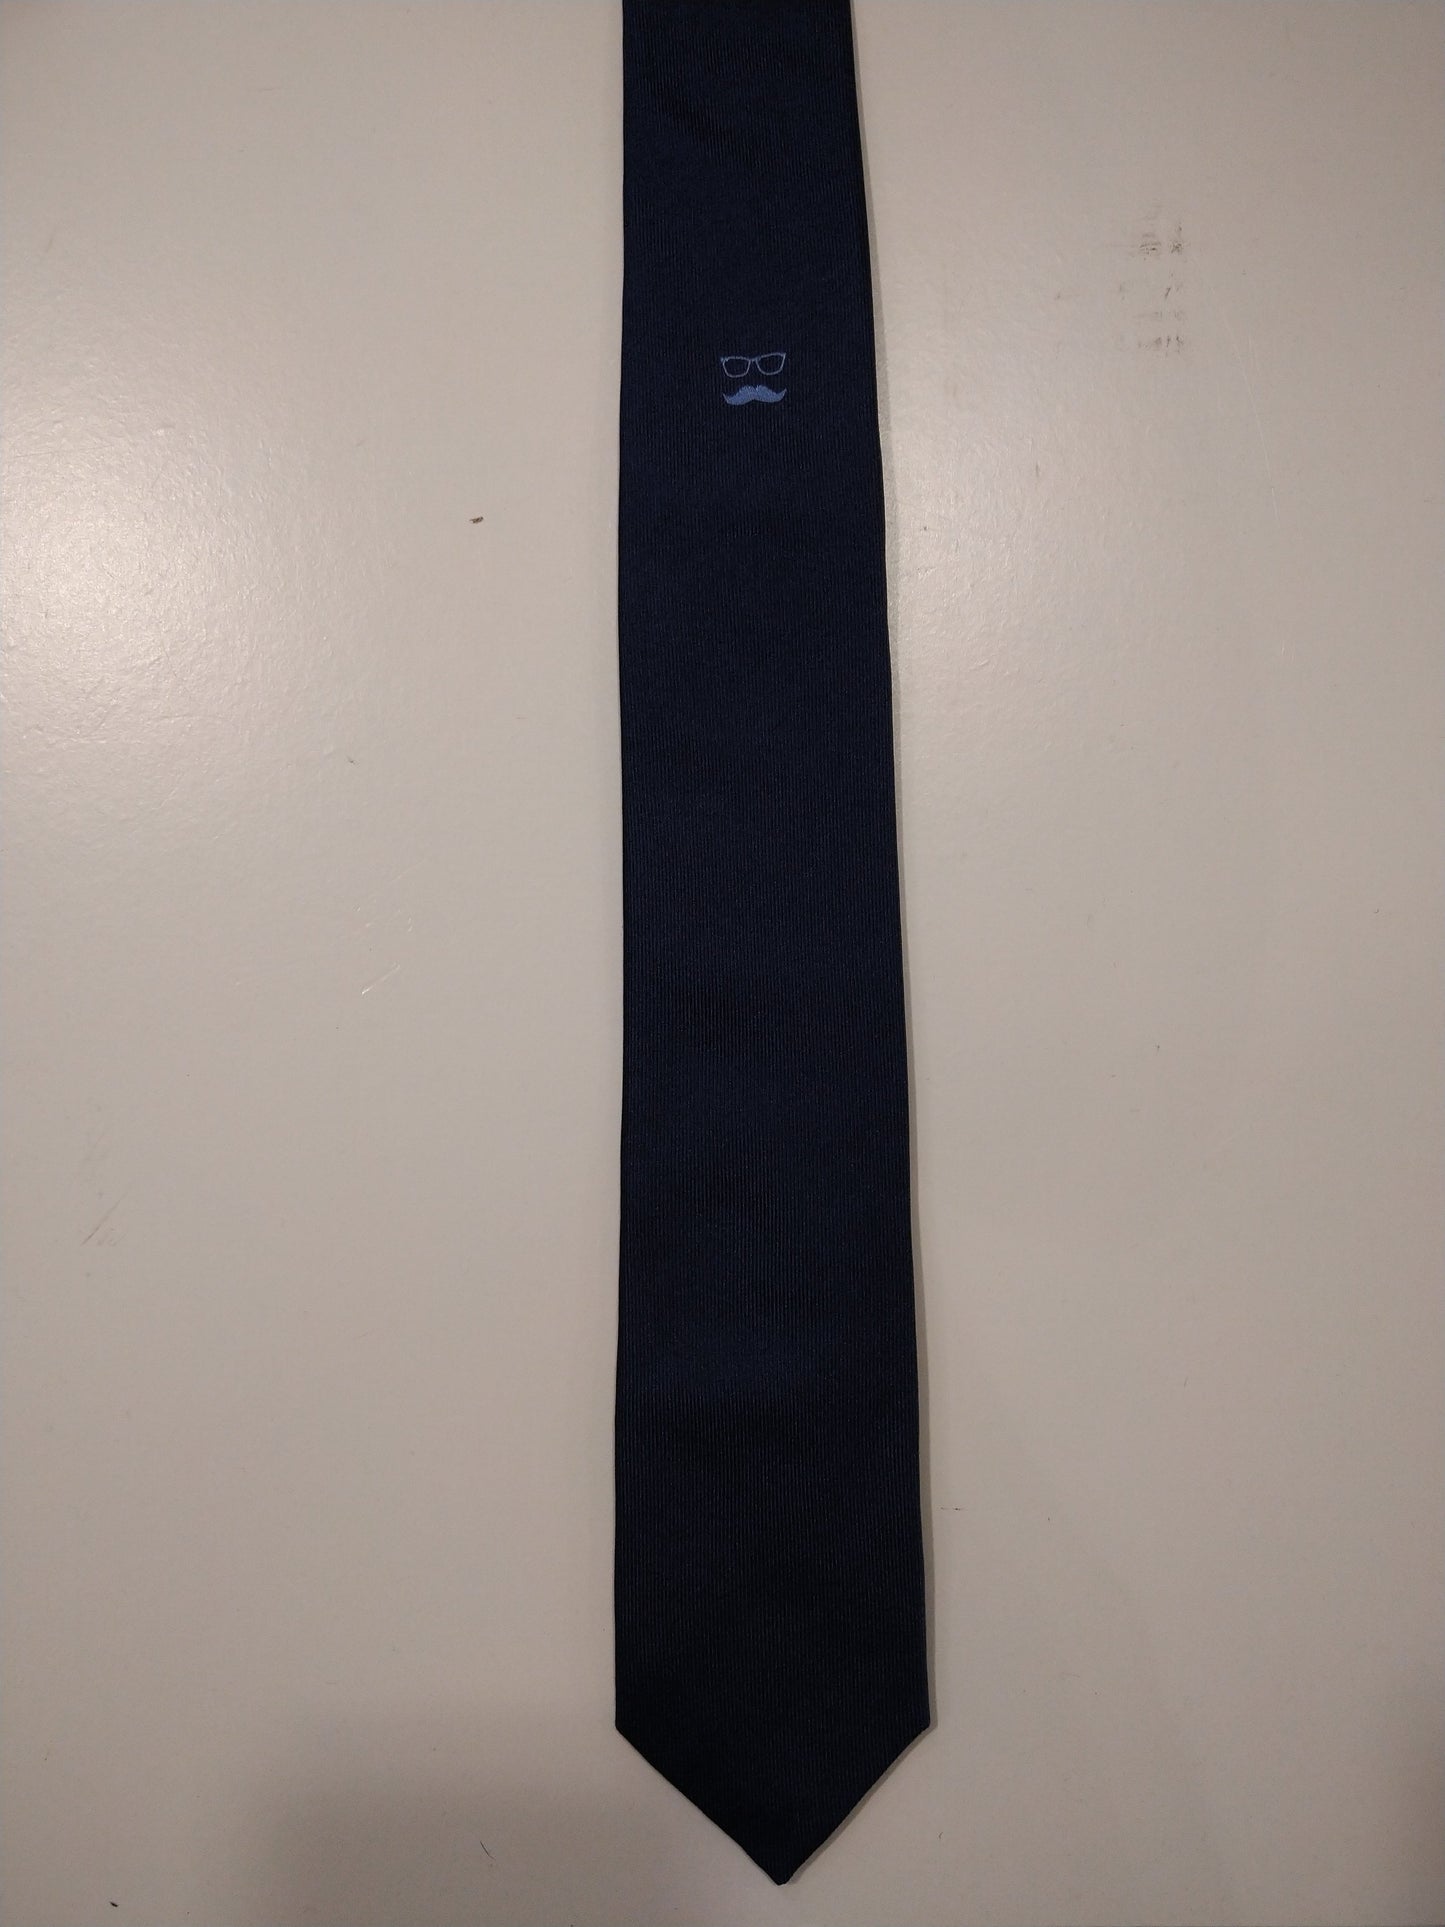 Sept cadran à cravate étroite en soie de Londres. Bleu